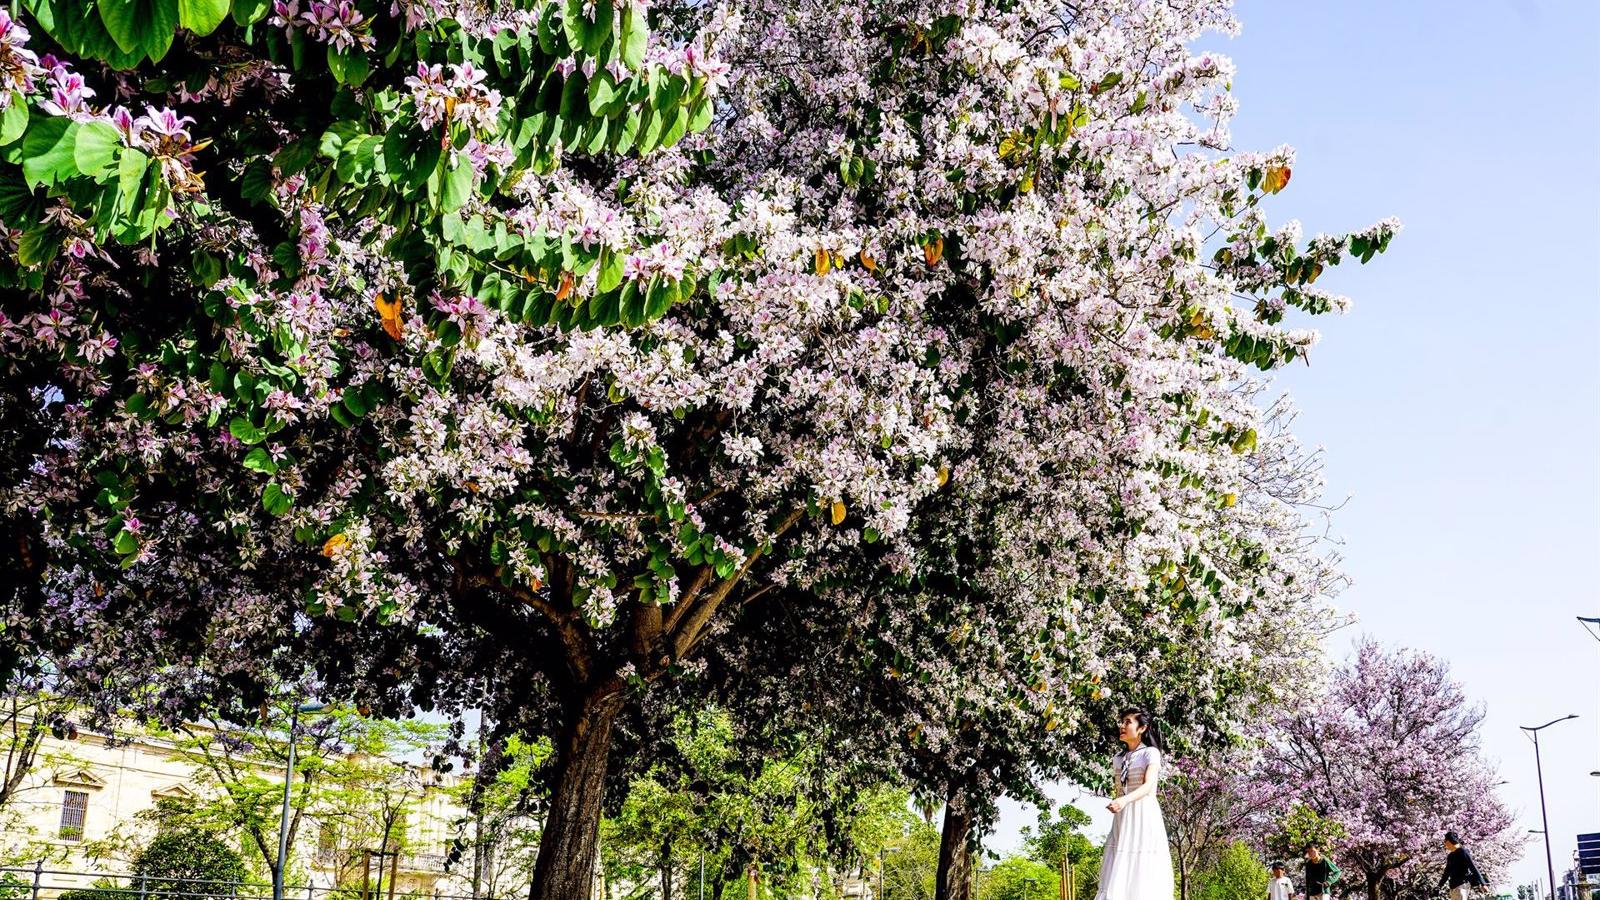 Torrejón se reforesta con 12.557 árboles nuevos en los cuatro últimos años